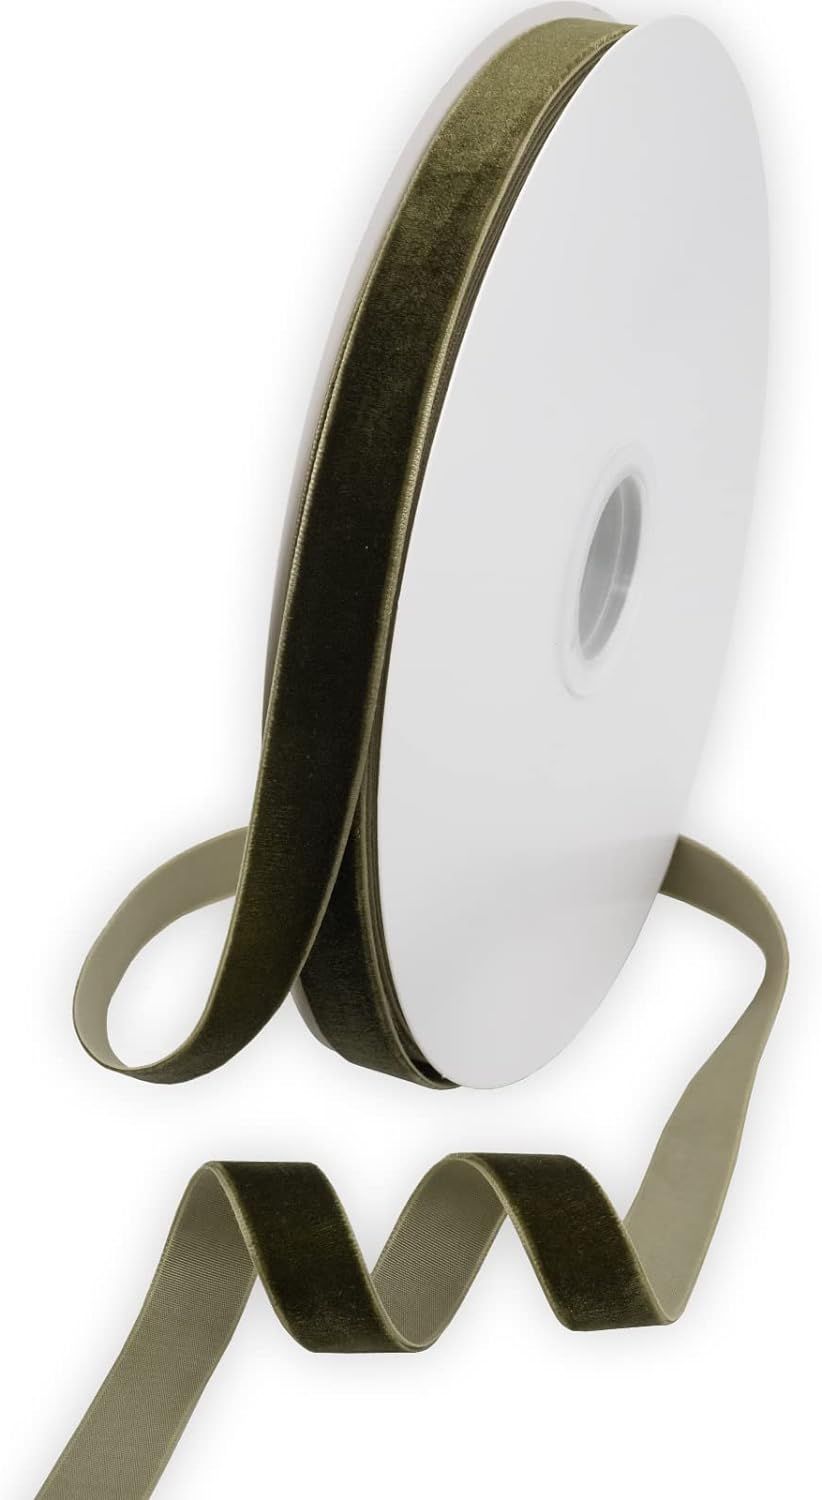 XMLMSH Olive Green Velvet Ribbon 5/8 Inch Moss Single Face Velvet Ribbon for Gift Wrapping, Hair ... | Amazon (US)